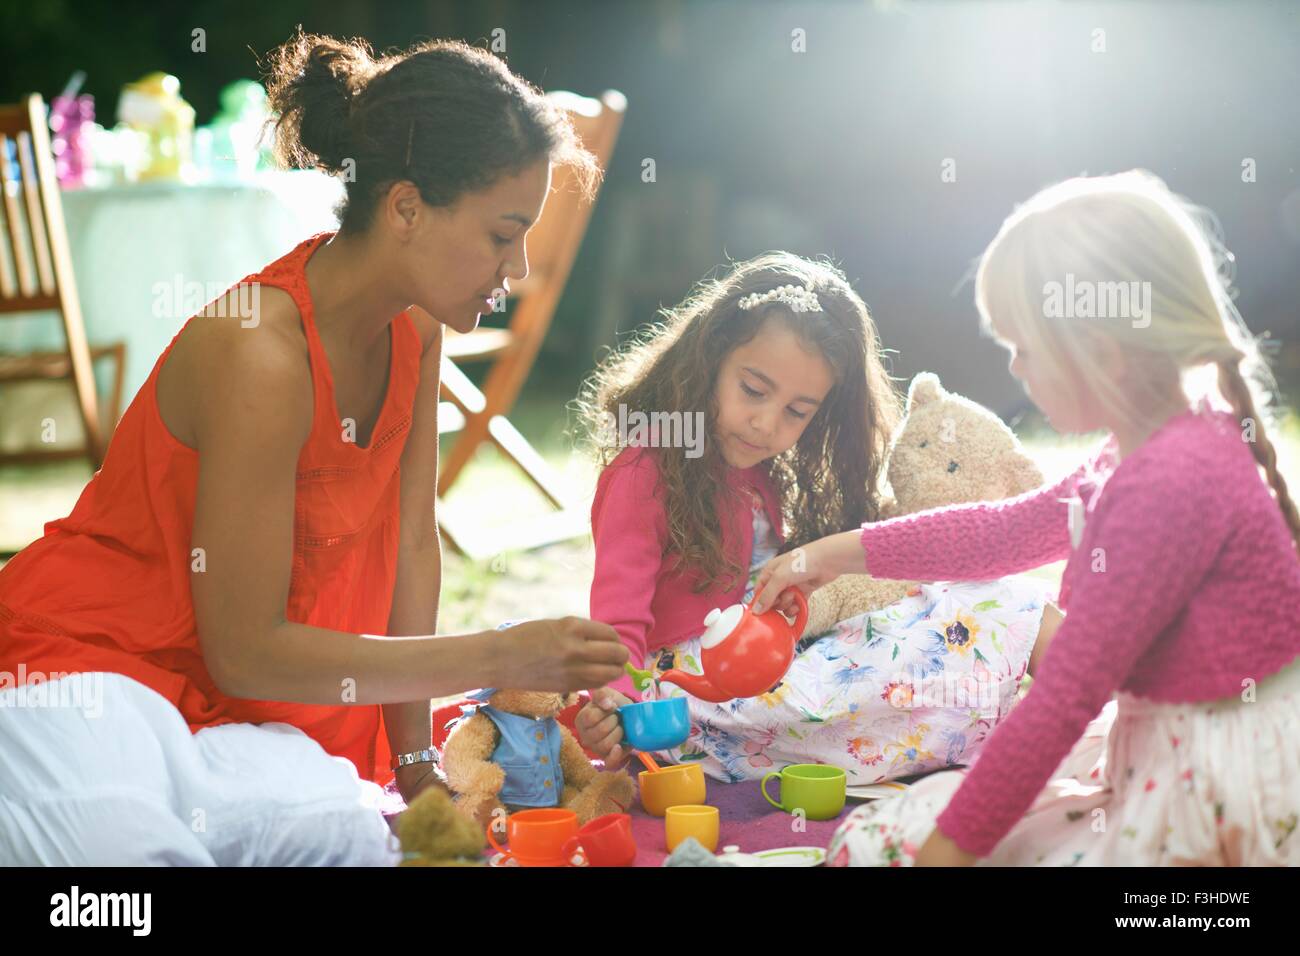 La madre y dos niñas juegan el picnic en el jardín fiesta de cumpleaños Foto de stock